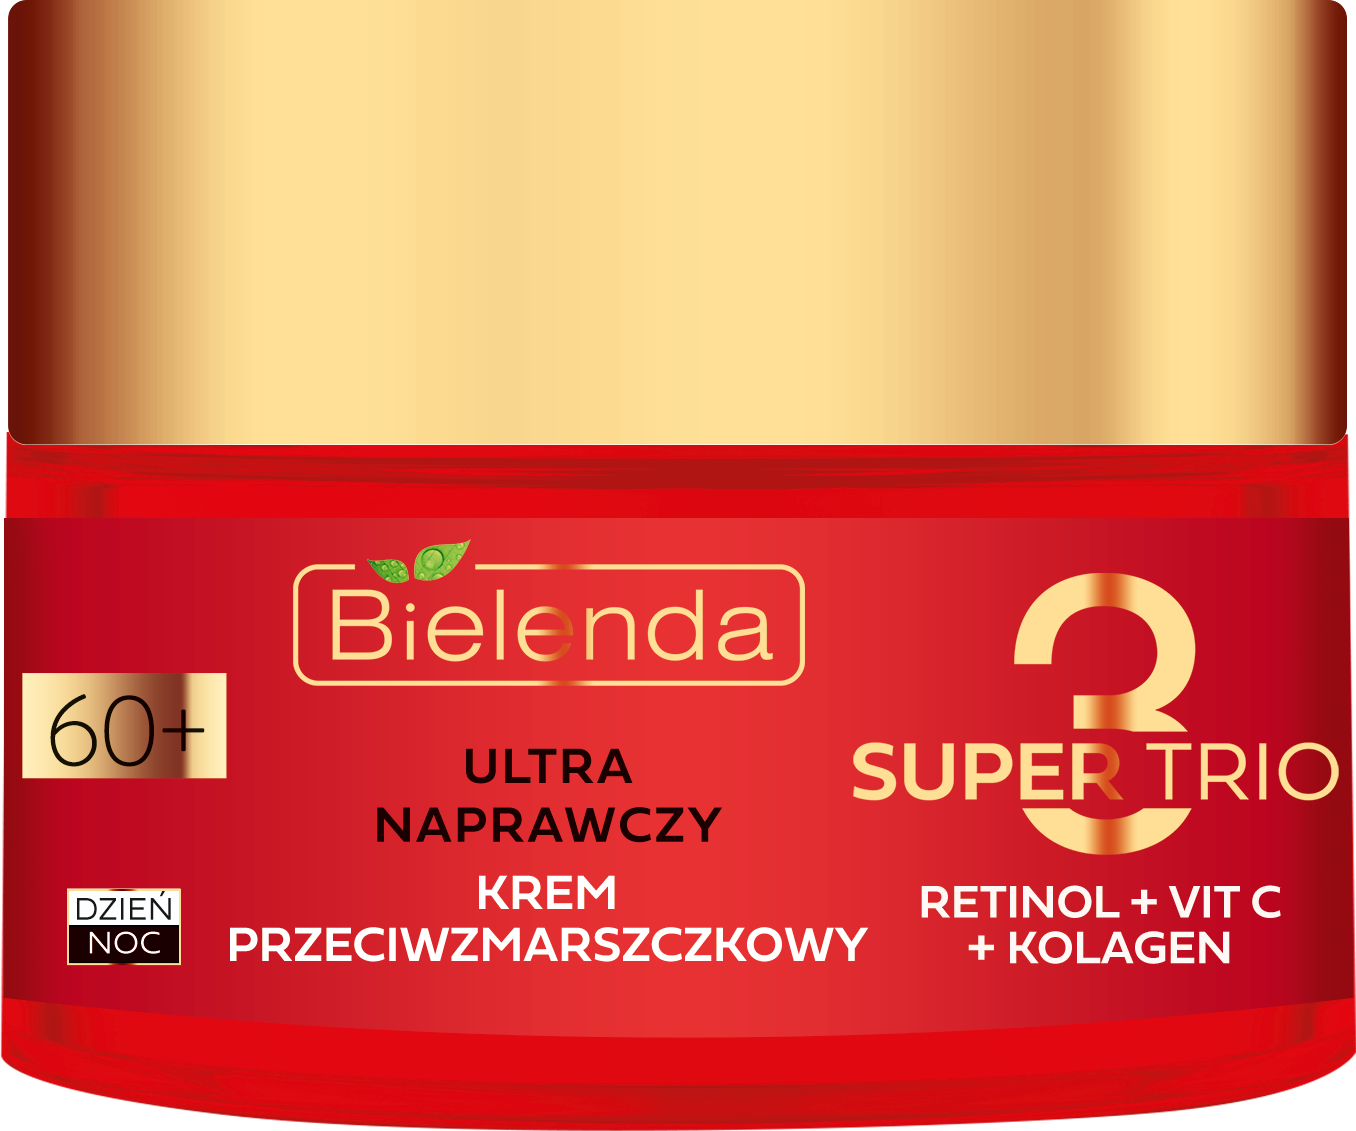 Крем для лица Bielenda Super Trio (Retinol + Vit C + Kolagen) 60+, 50 мл